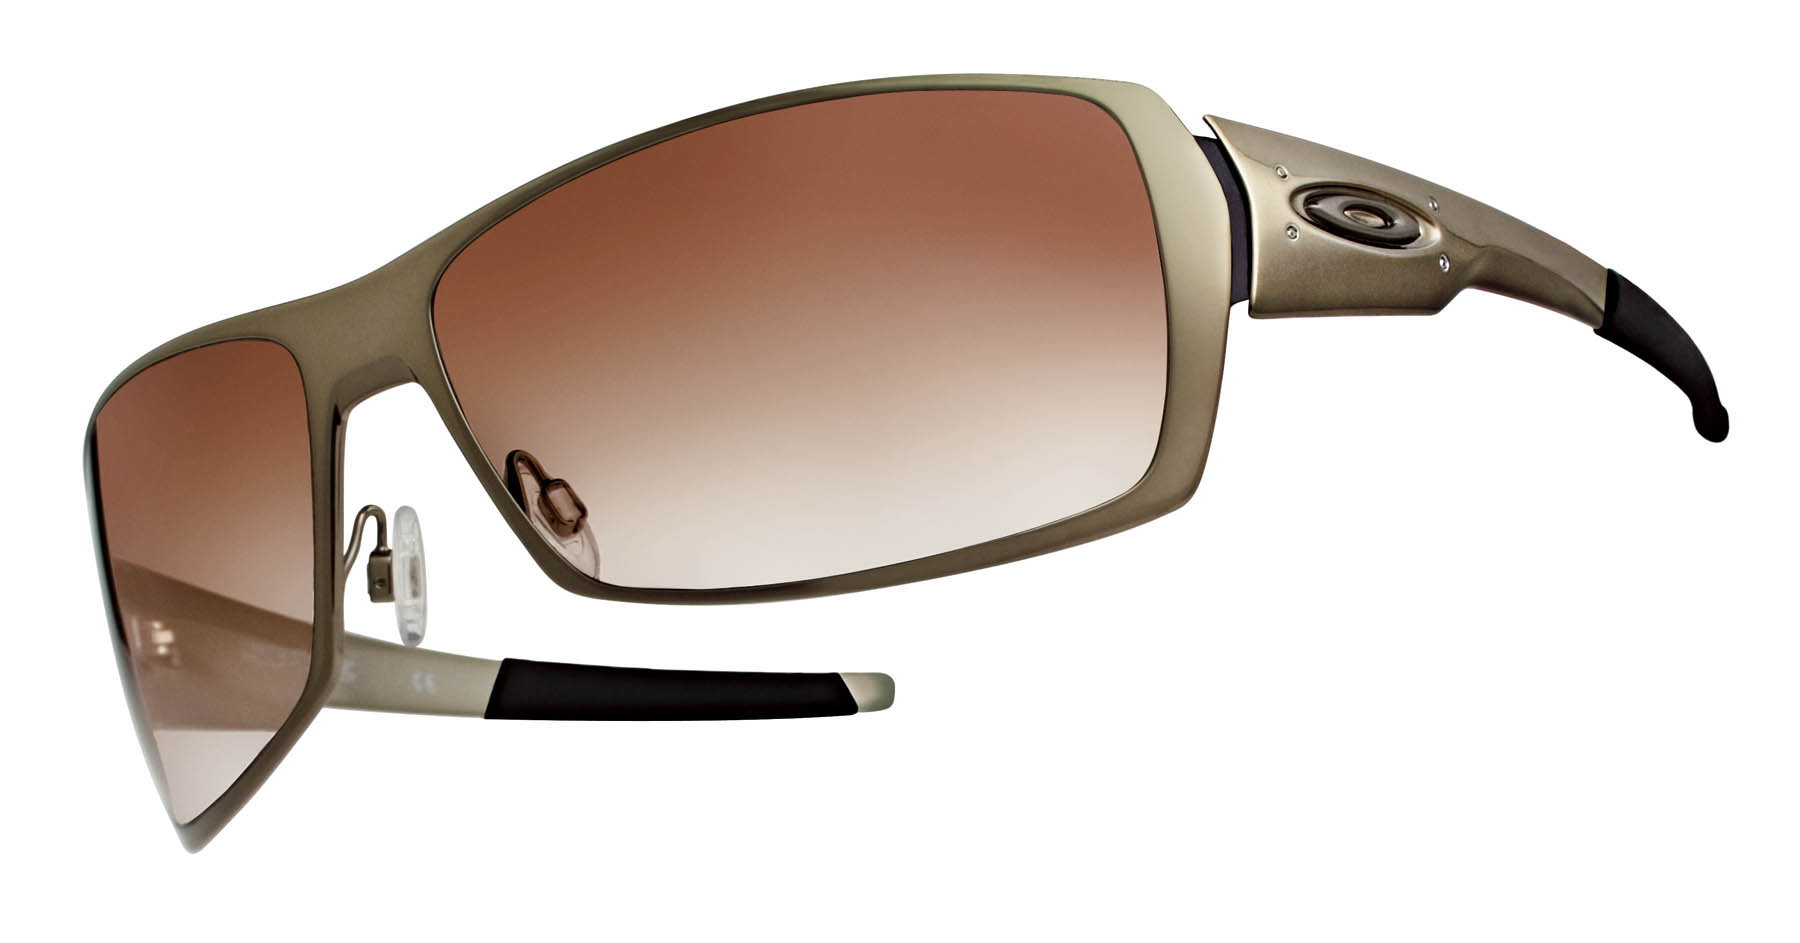 Photo Release -- Oakley Announces Release of SPIKE Eyewear